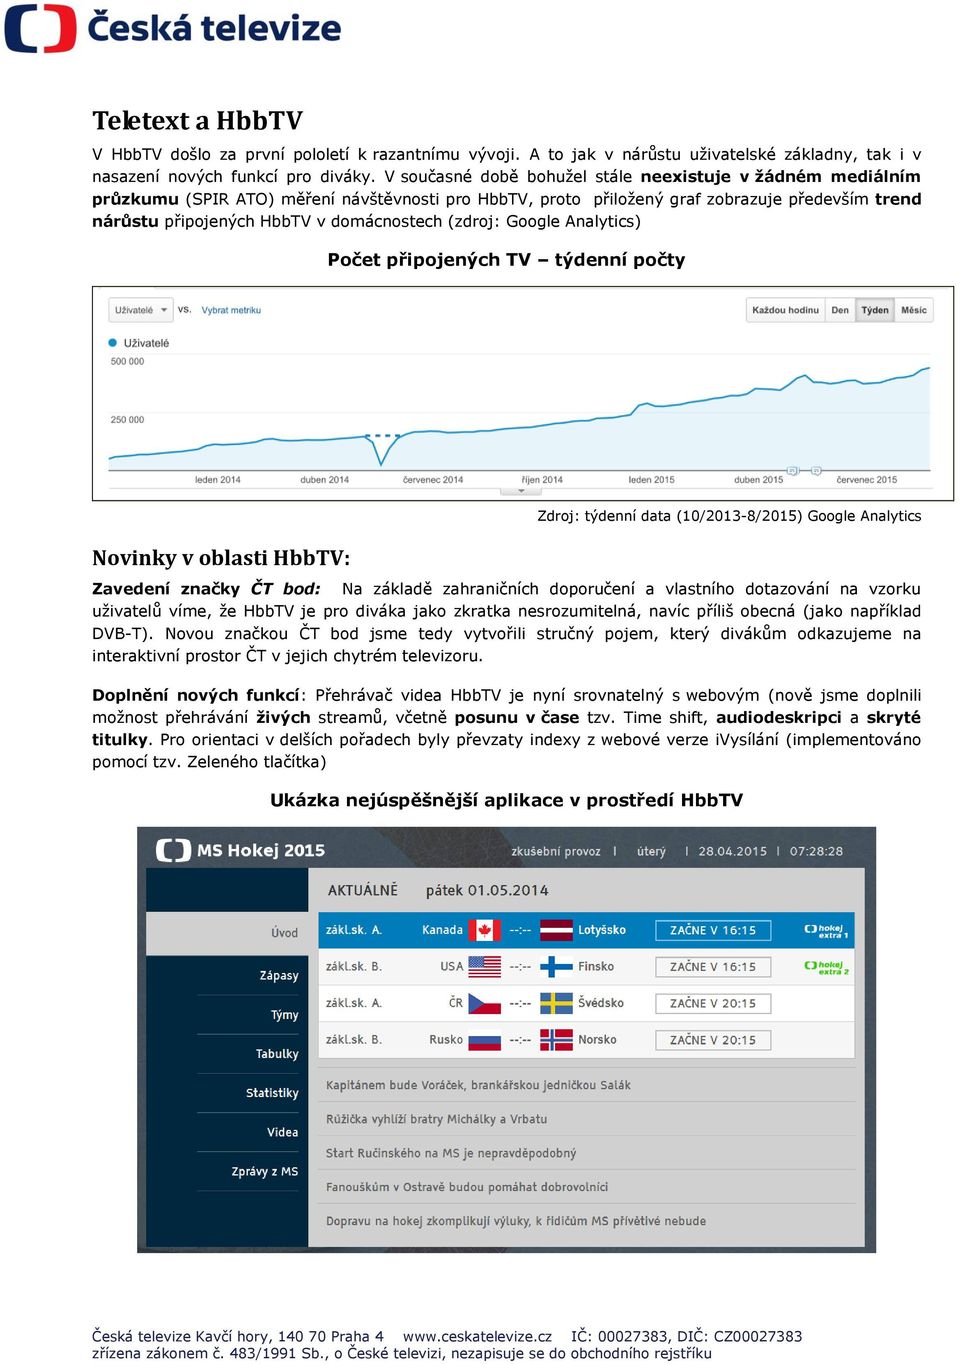 (zdroj: Google Analytics) Počet připojených TV týdenní počty Novinky v oblasti HbbTV: Zdroj: týdenní data (10/2013-8/2015) Google Analytics Zavedení značky ČT bod: Na základě zahraničních doporučení